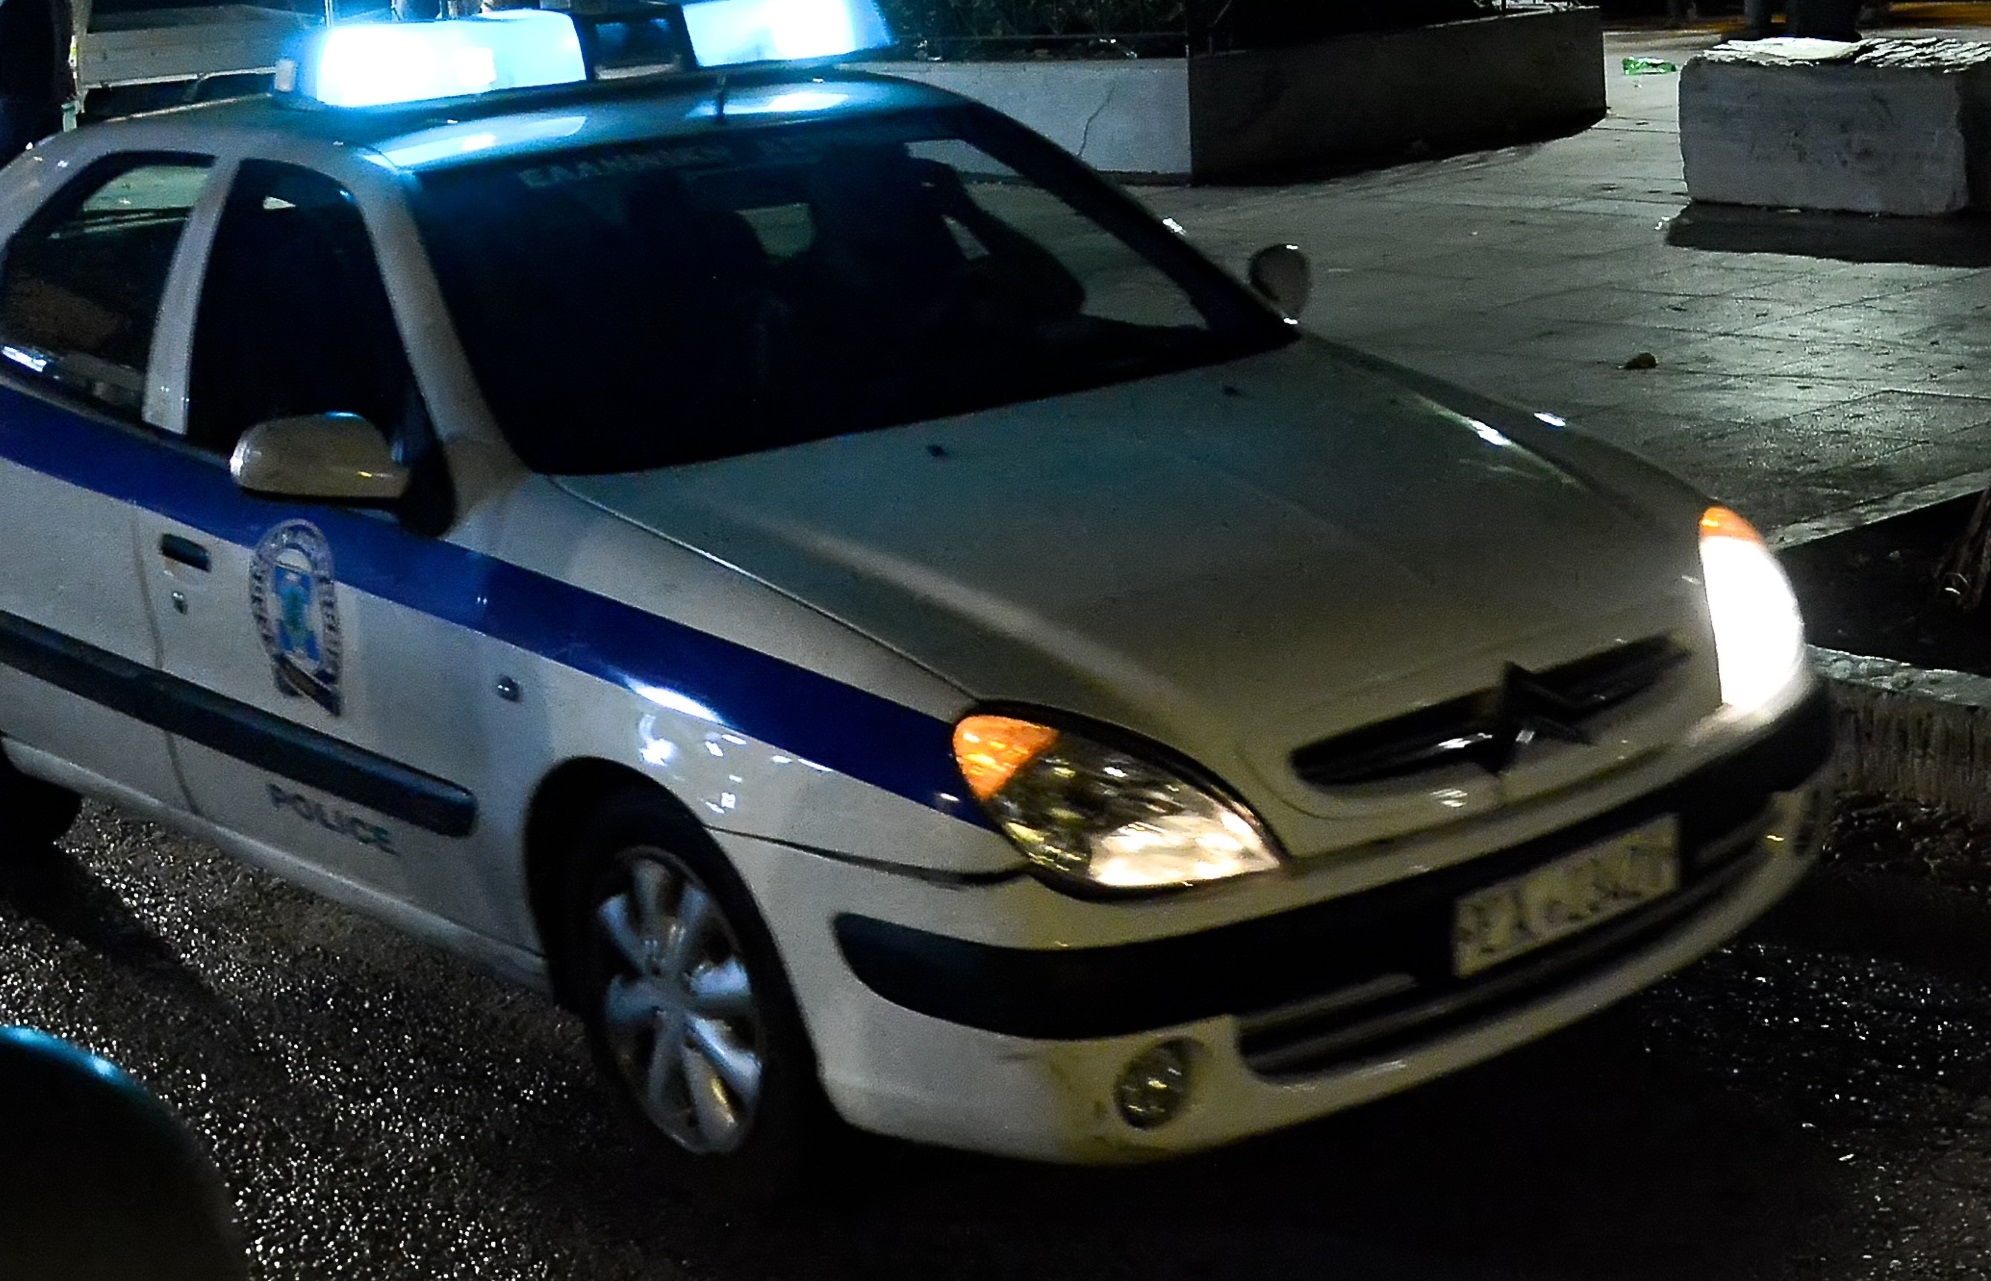 Θεσσαλονίκη: Νεκρός ανήλικος μετά από πυροβολισμό